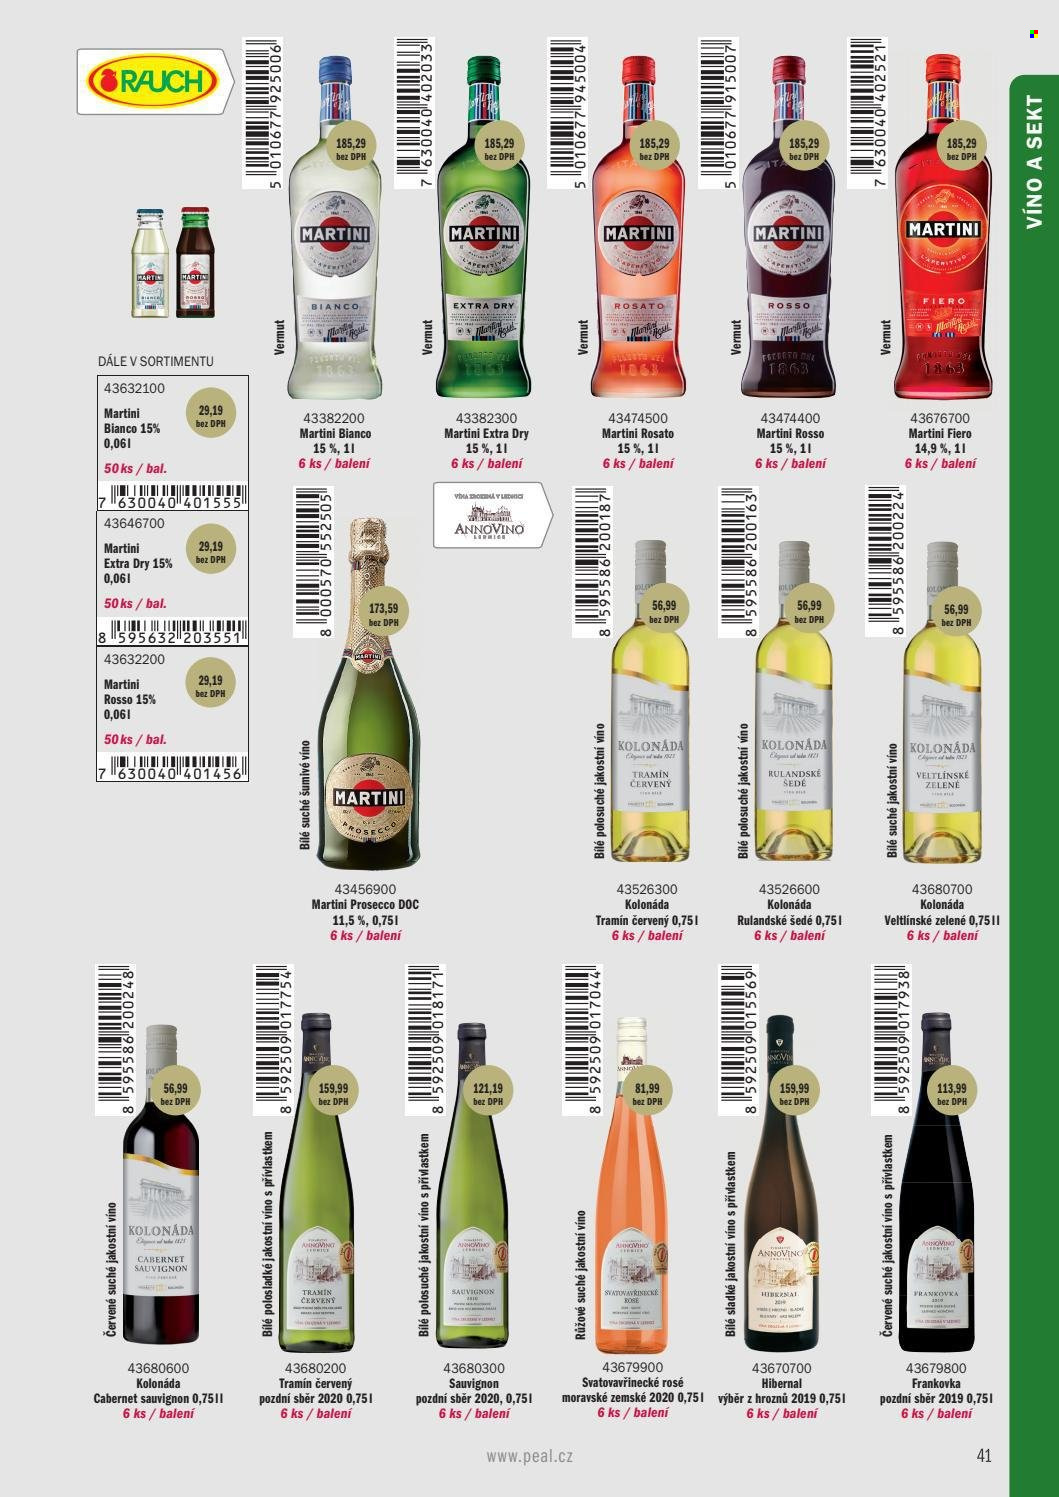 Leták PEAL - Produkty v akci - oplatky, Kolonáda, Rauch, alkohol, sekt, Rulandské šedé, Tramín červený, Prosecco, růžové víno, Svatovavřinecké, Frankovka, Veltlínské zelené, Cabernet Sauvignon, Hibernal, šumivé víno, Martini, vermouth. Strana 31.